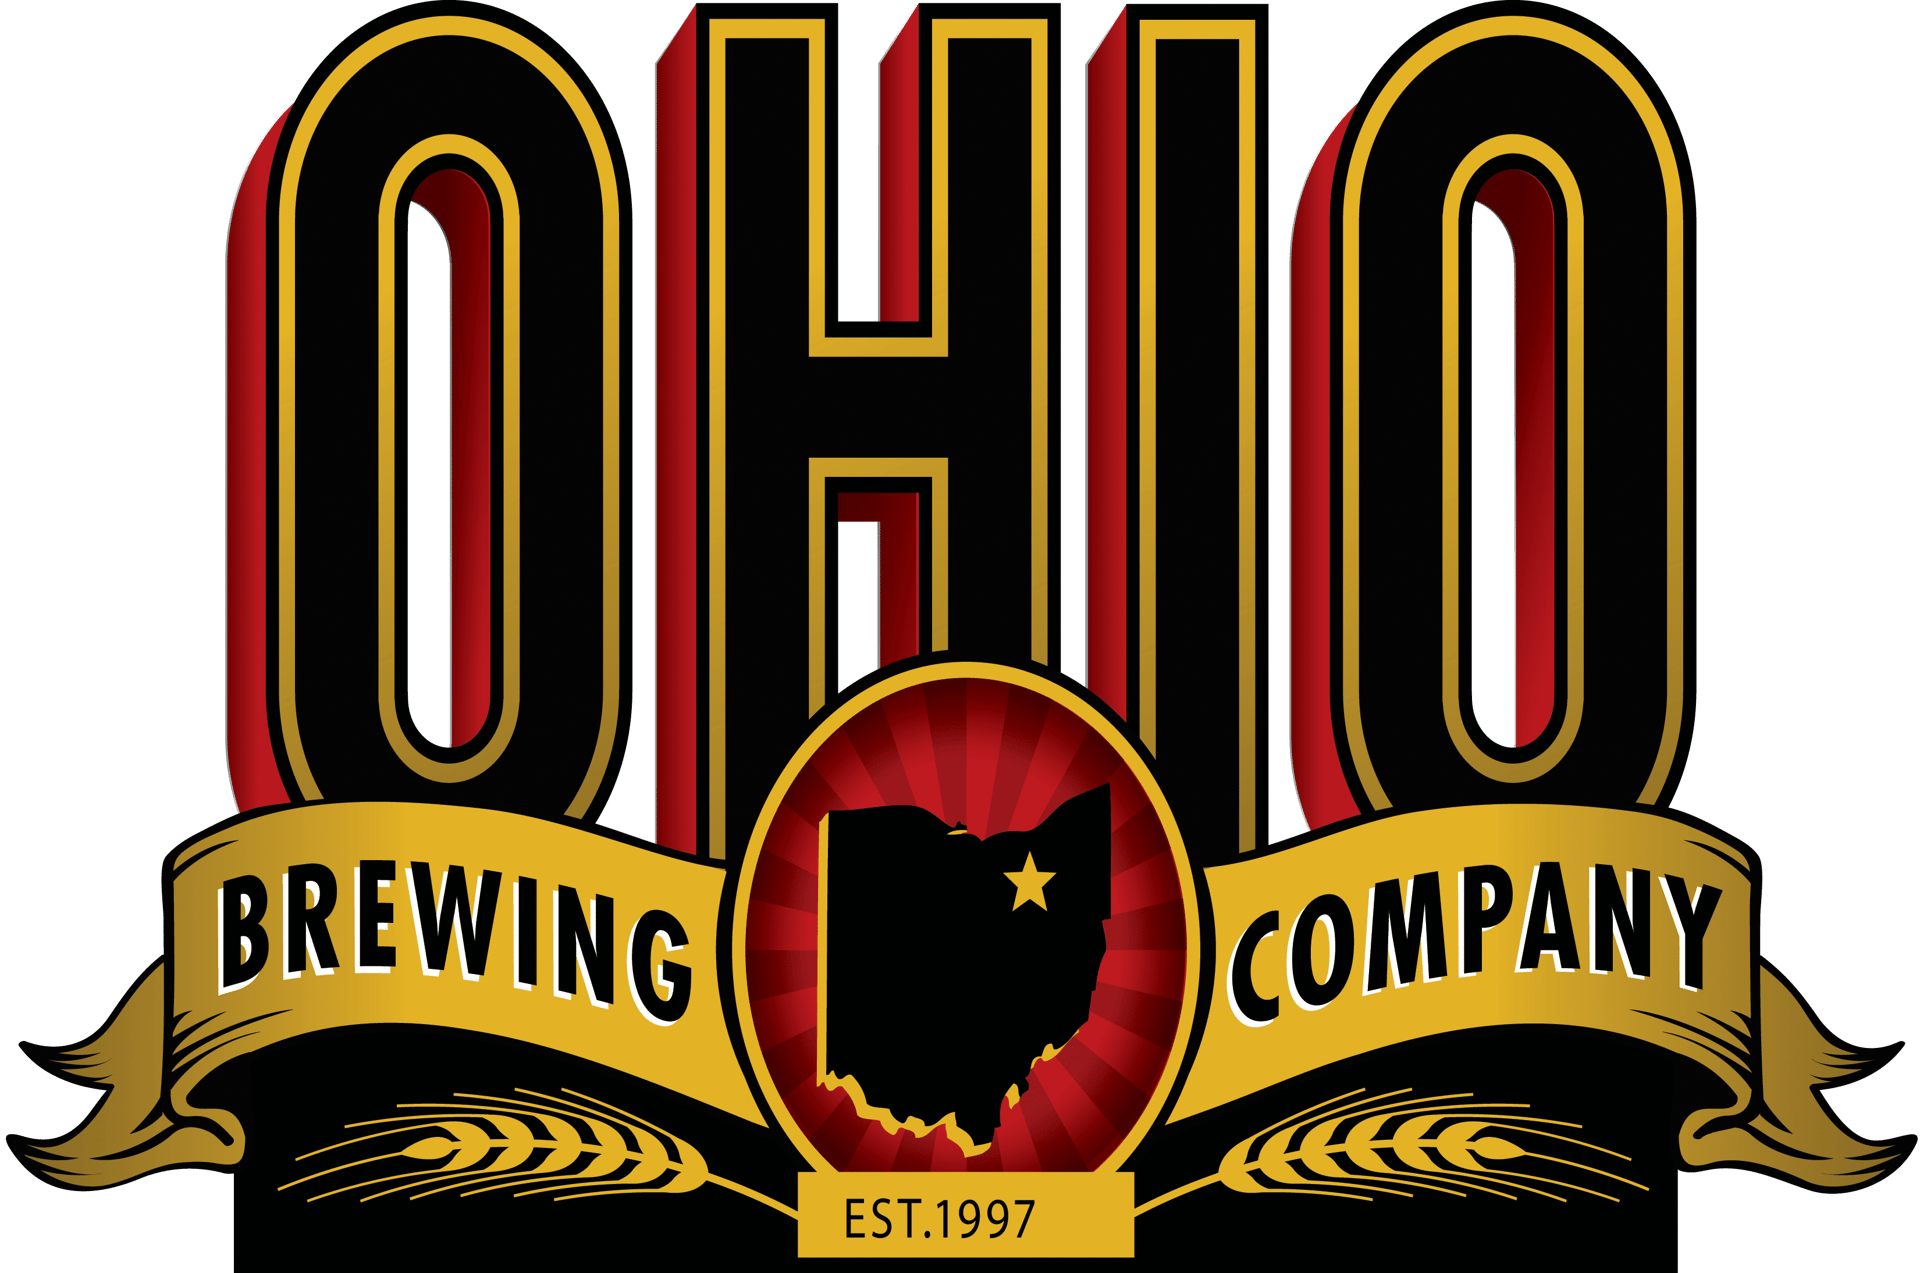 Ohio Brewing Company